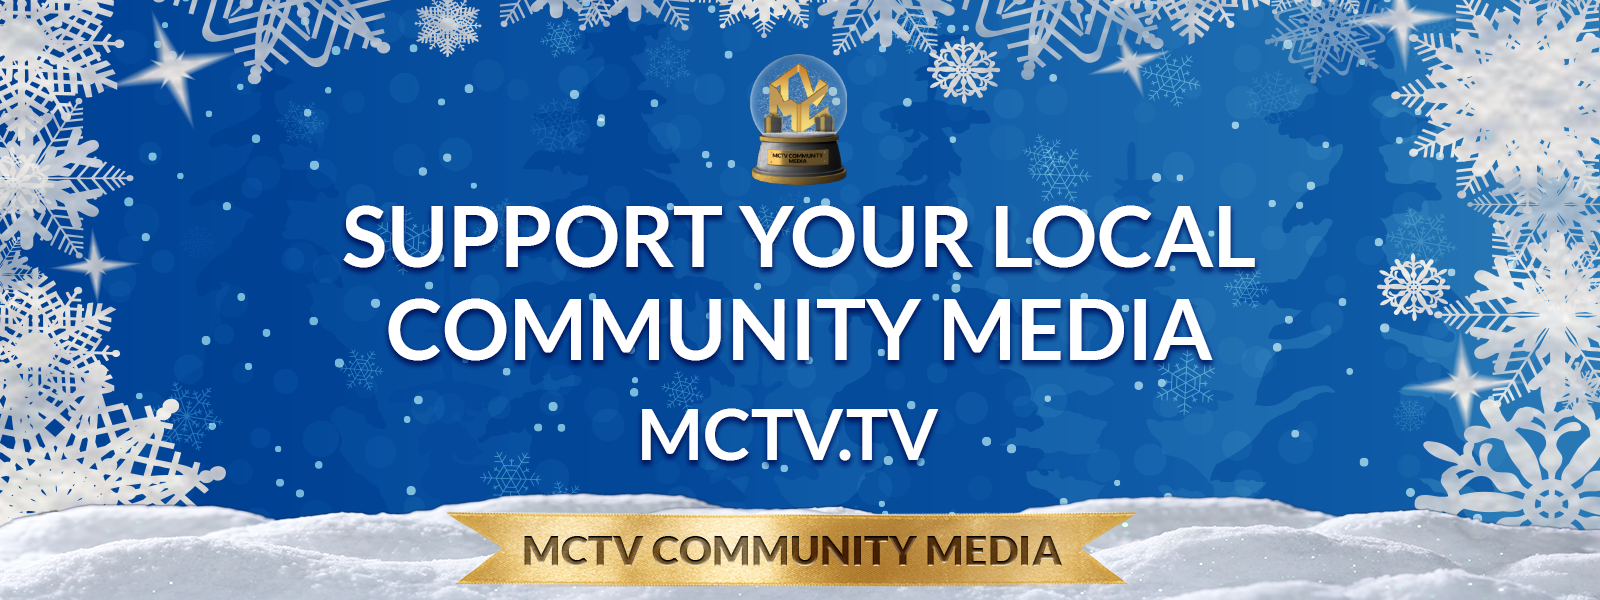 MCTV Community Media